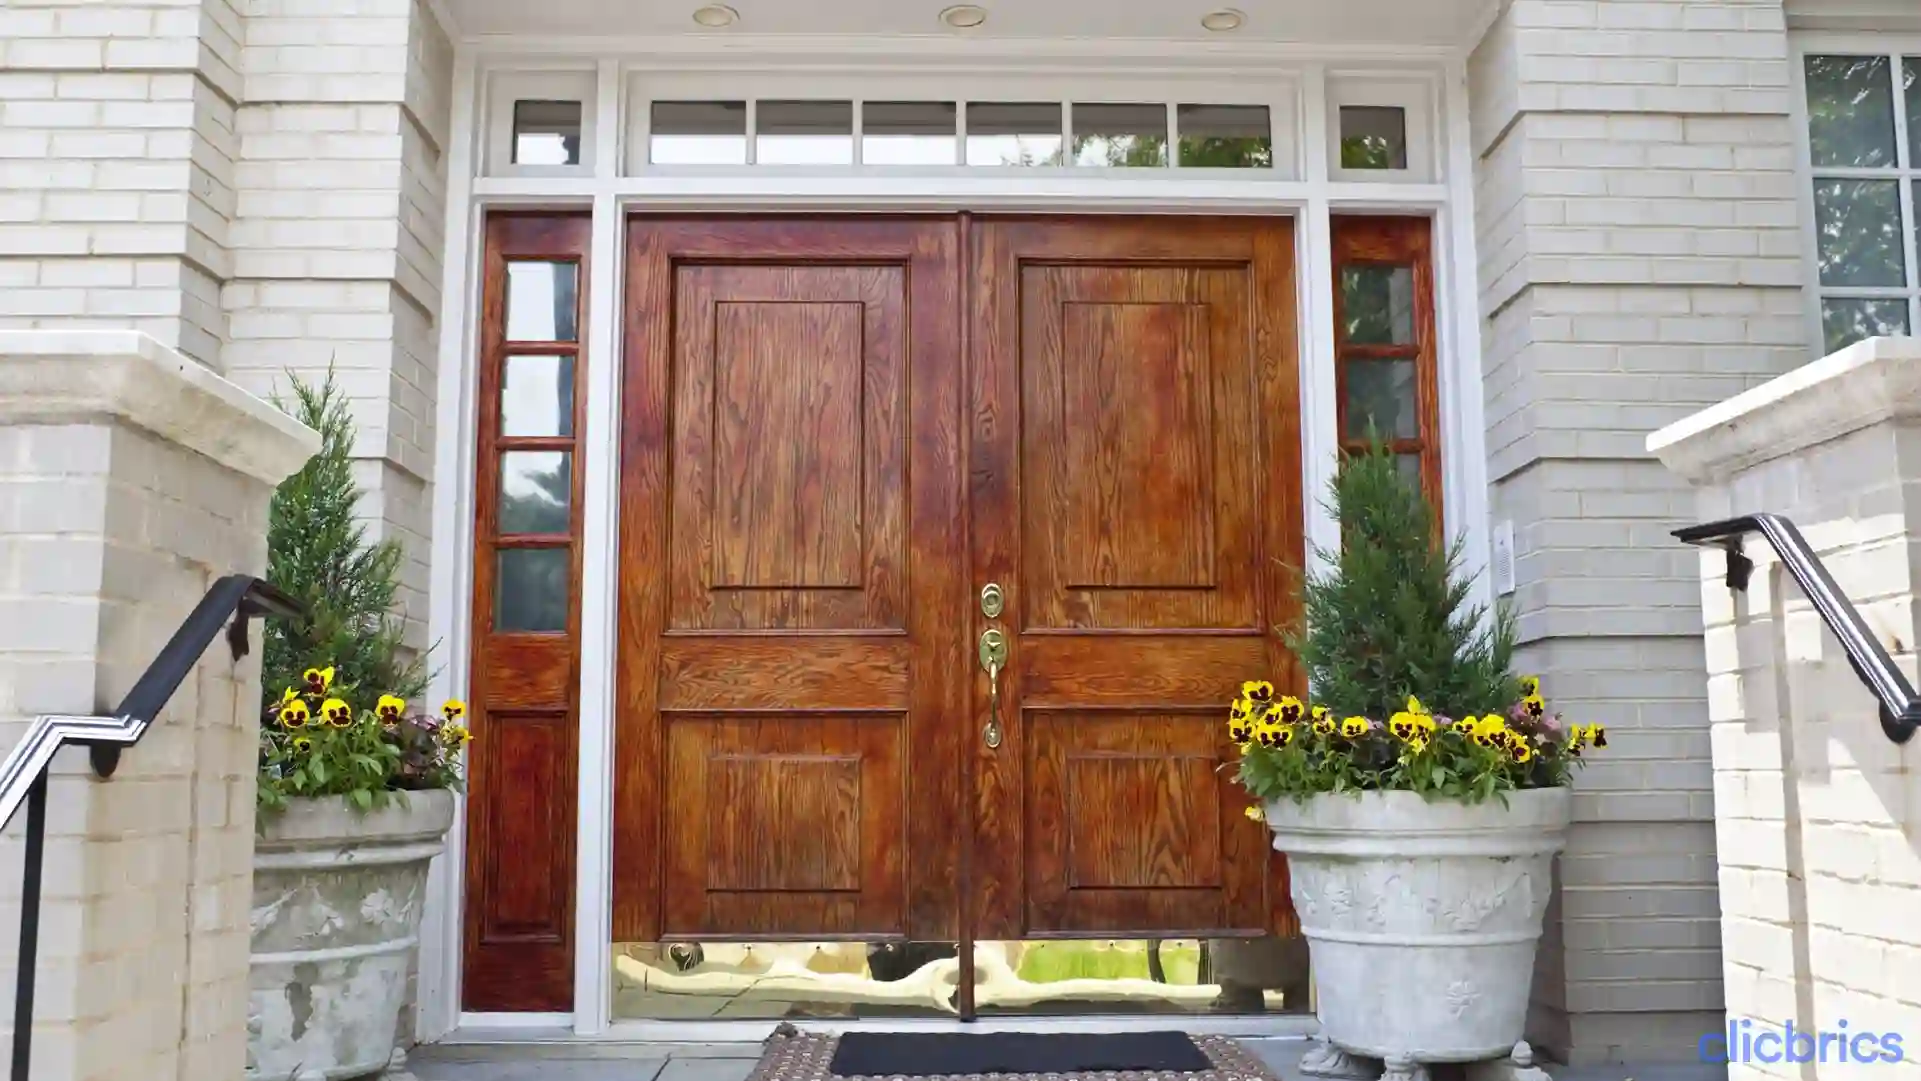  1664795014007 Wooden Double Door Design.webp